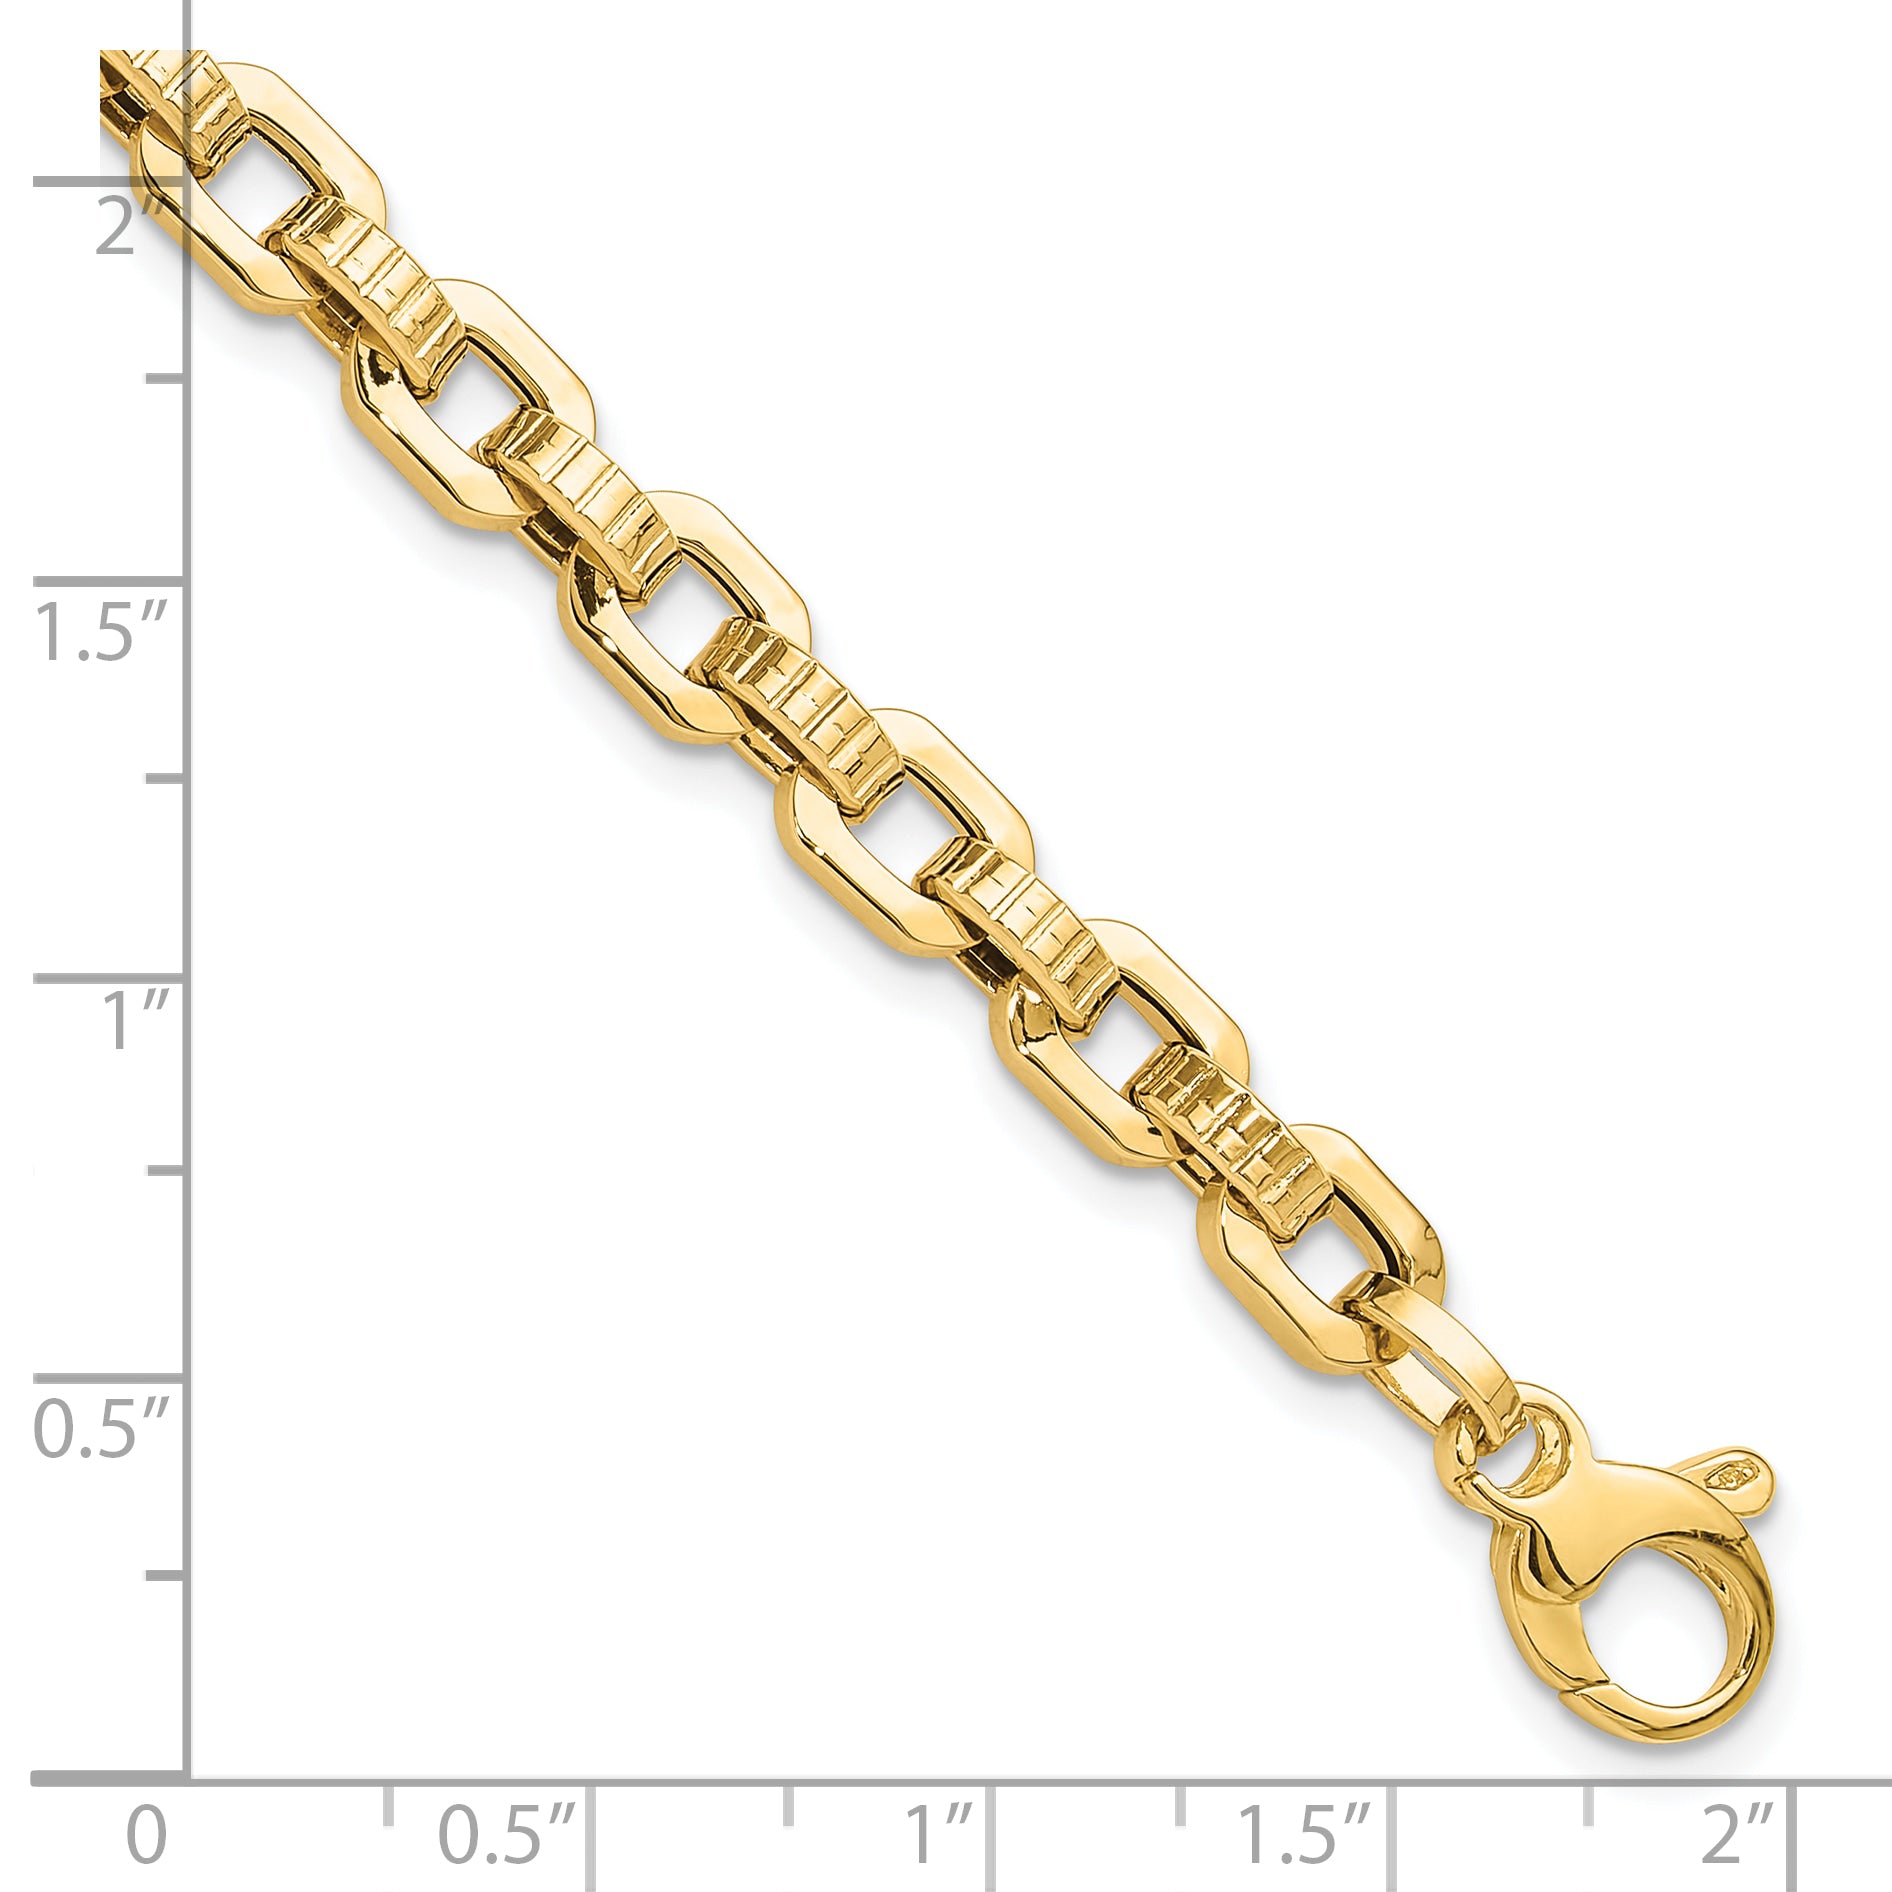 14K Gold Polished & Textured Fancy Link Bracelet